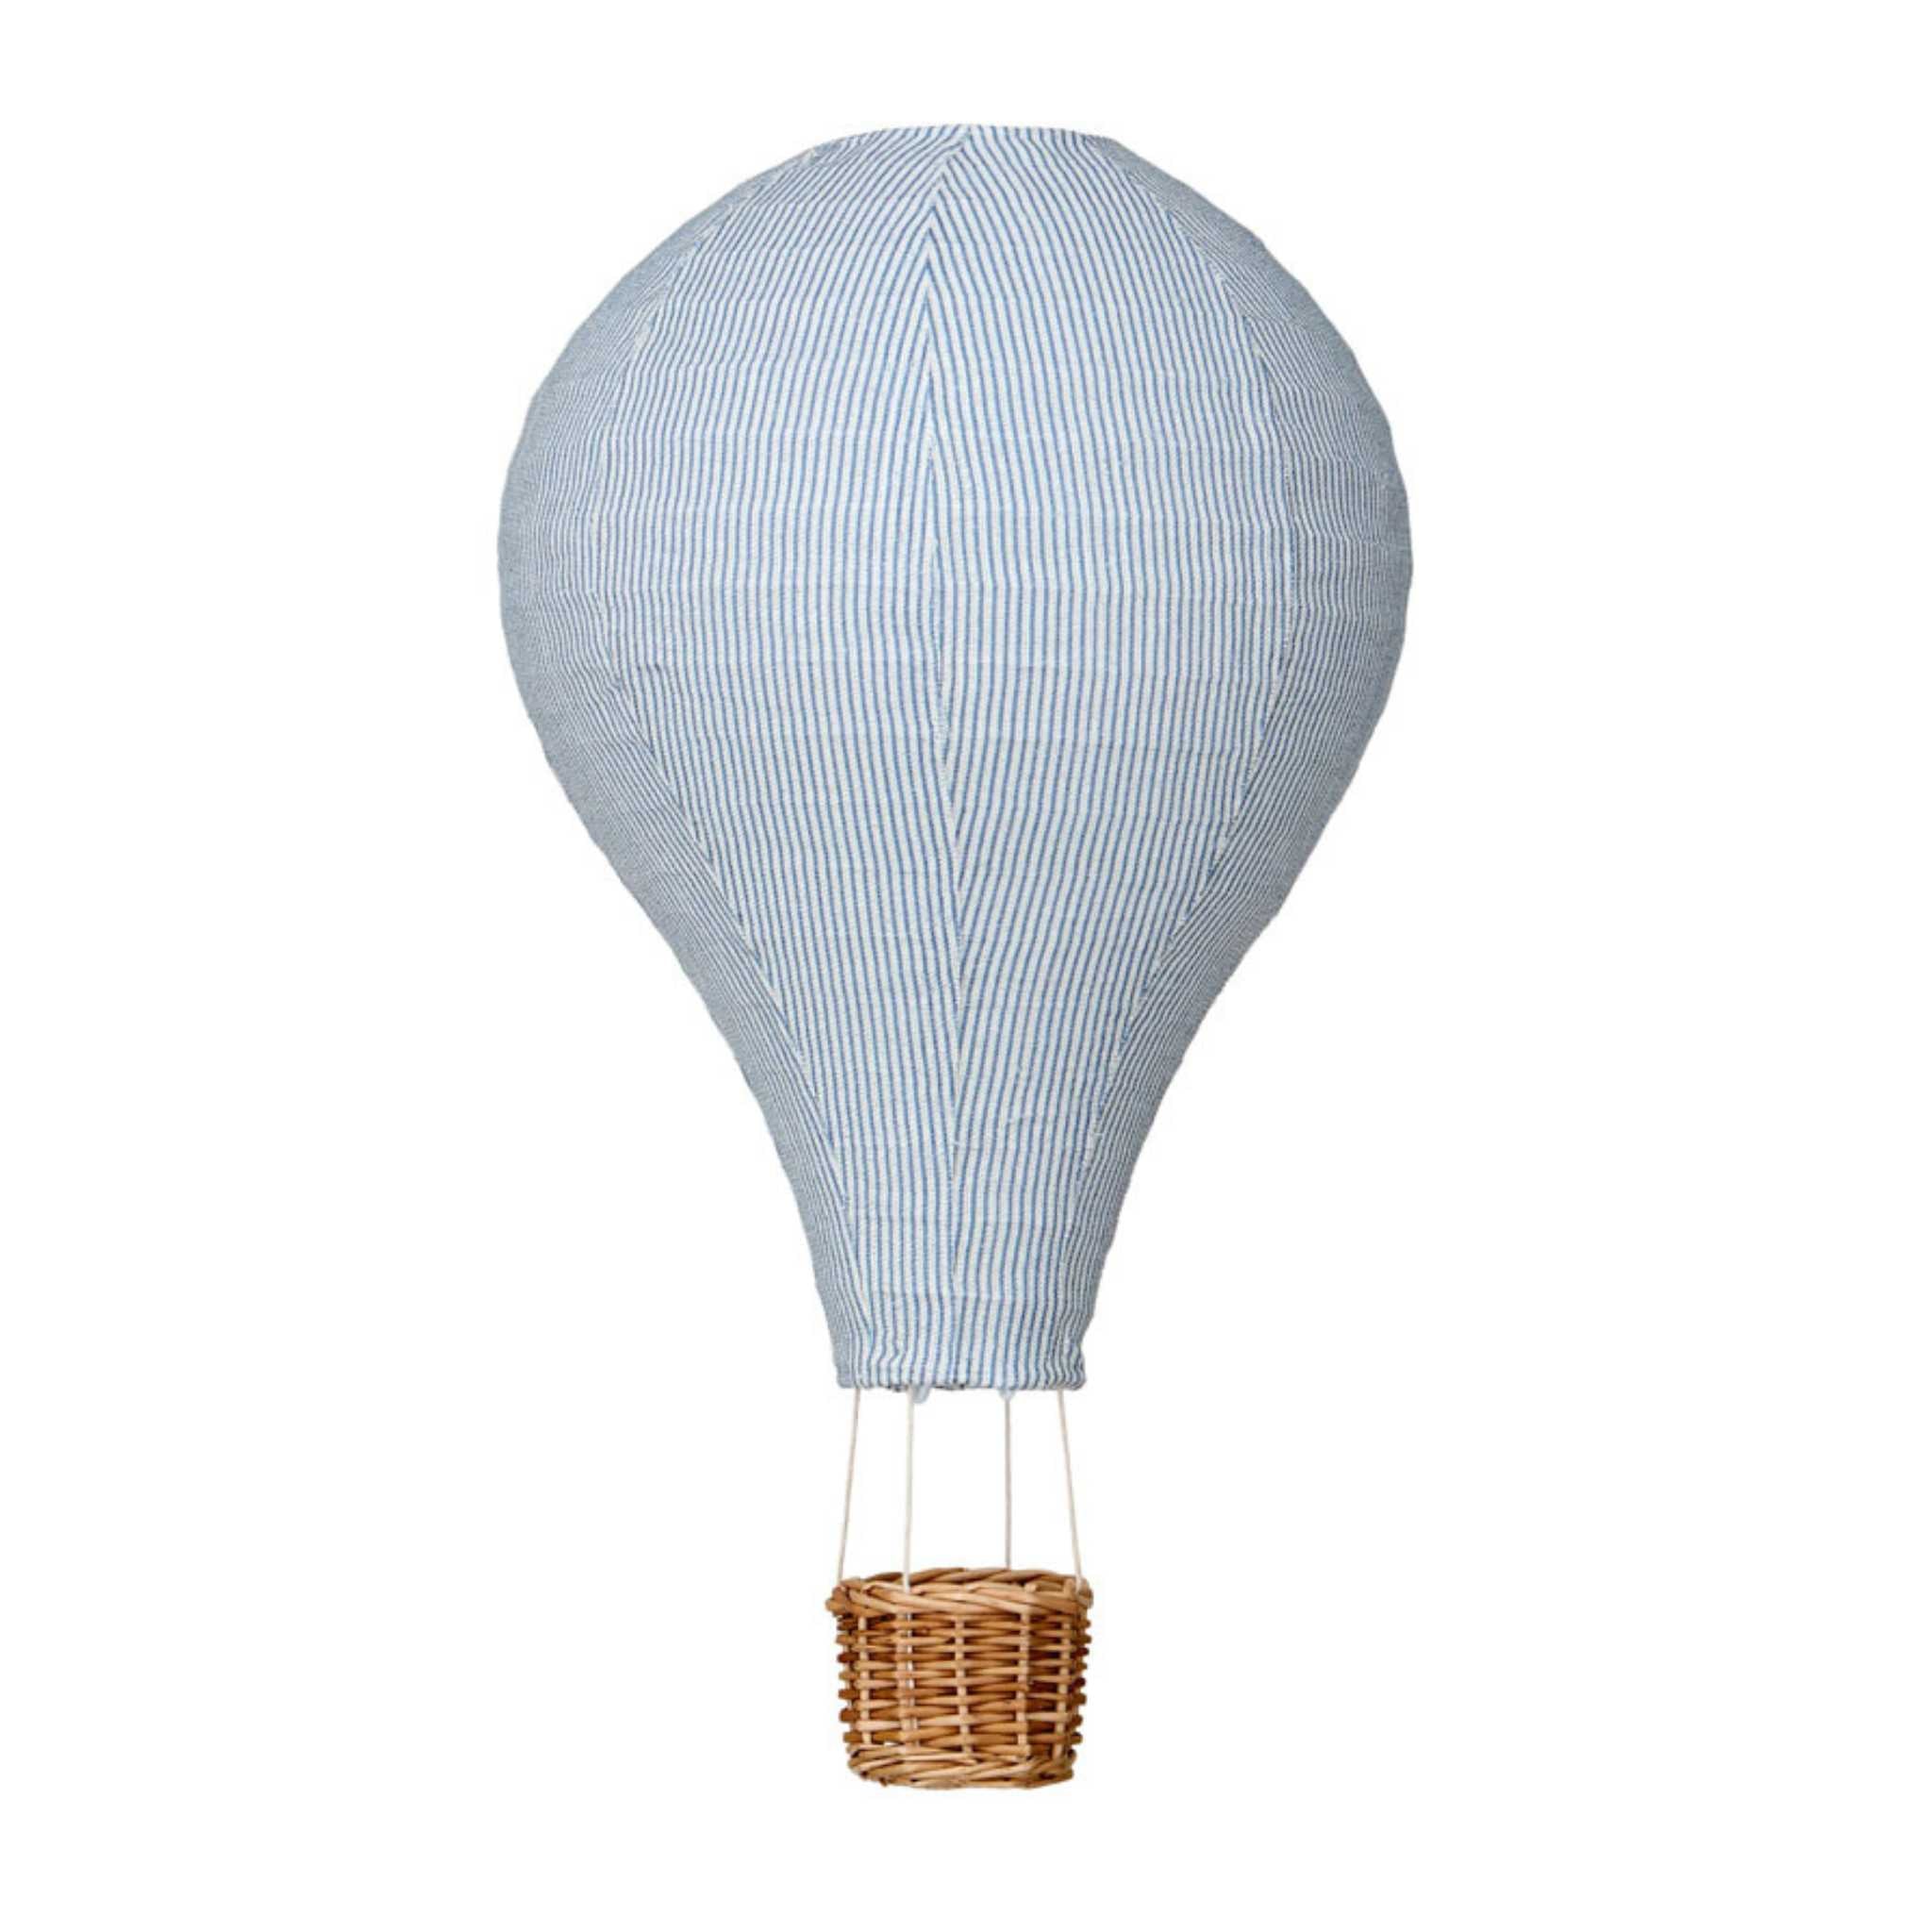 Cam Cam Hot Air Balloon Light Shade - Classic Blue Stripes